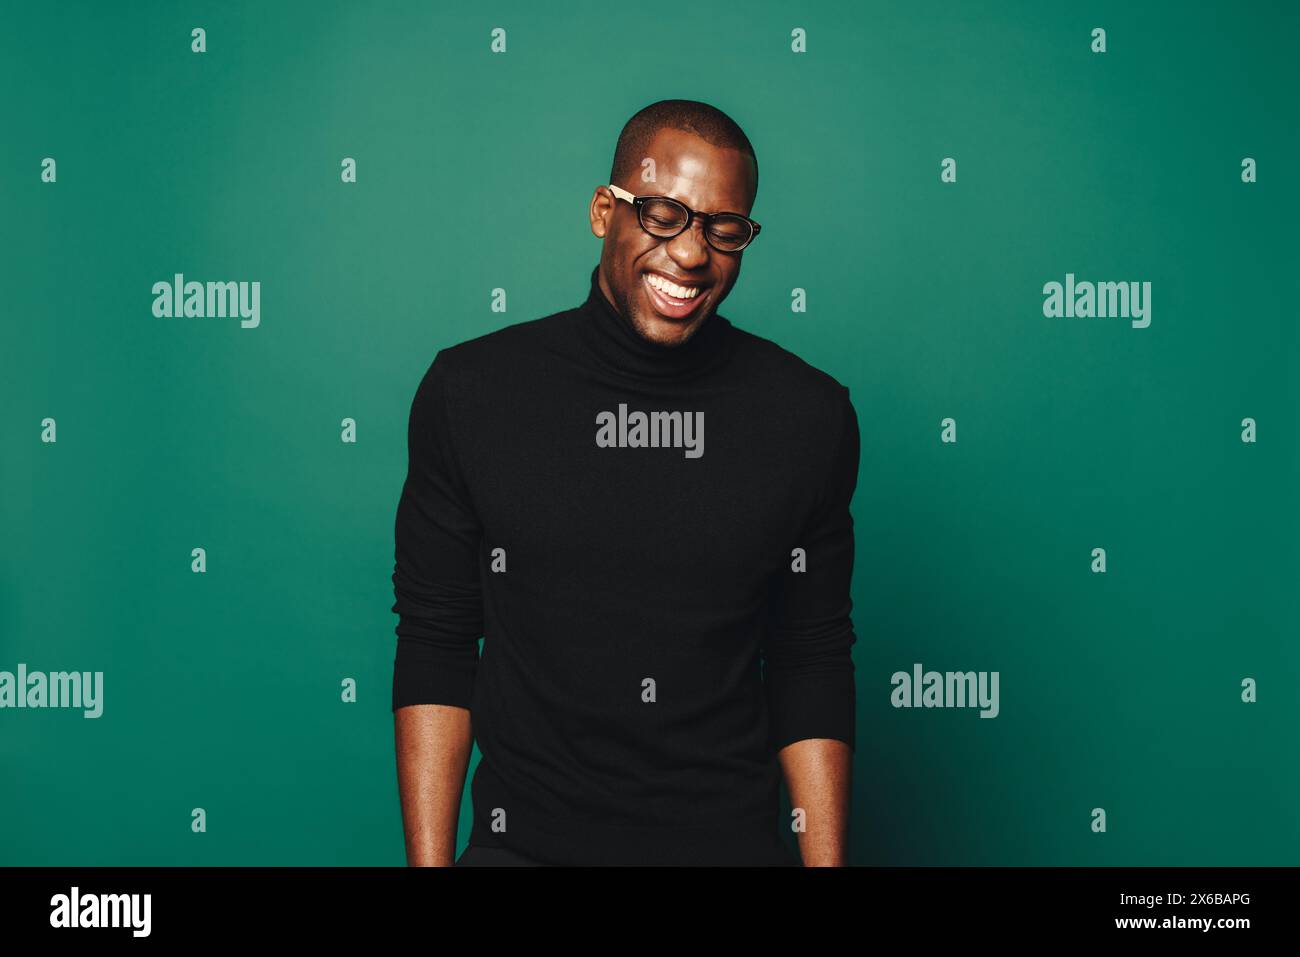 Jeune homme africain avec un sourire confiant se tient dans un studio. Il porte des lunettes, et un pull noir décontracté, rayonnant de bonheur sur un dos vert Banque D'Images